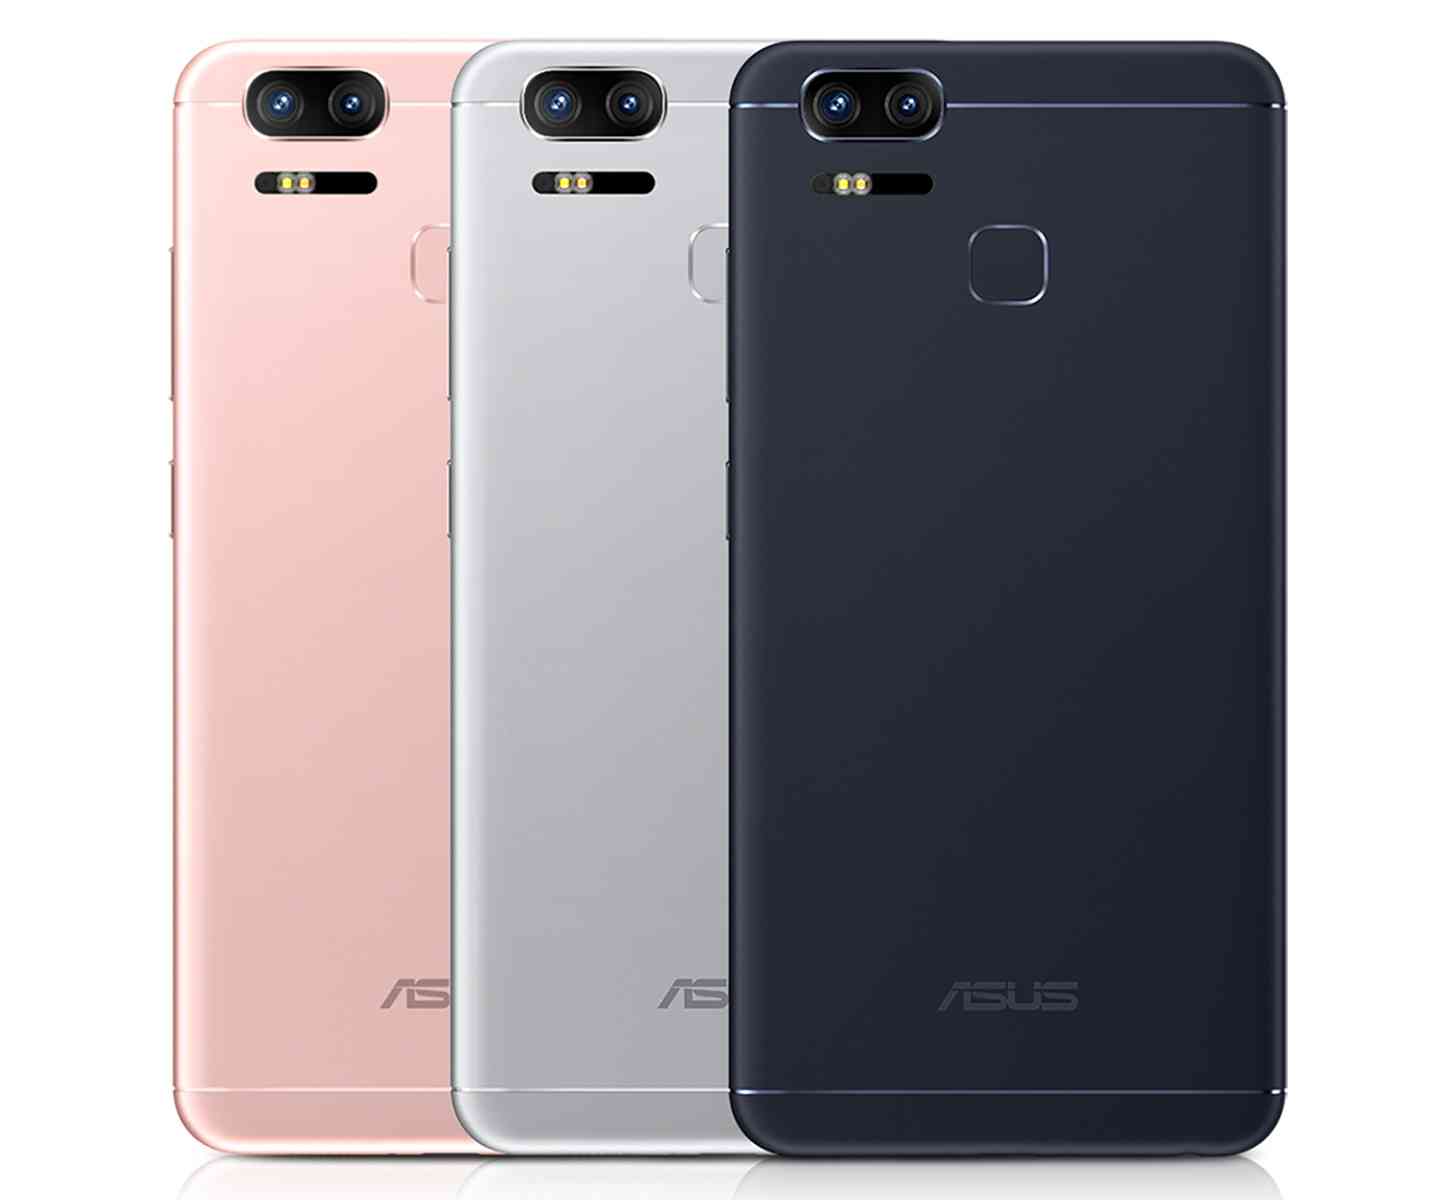 ASUS ZenFone 3 Zoom official